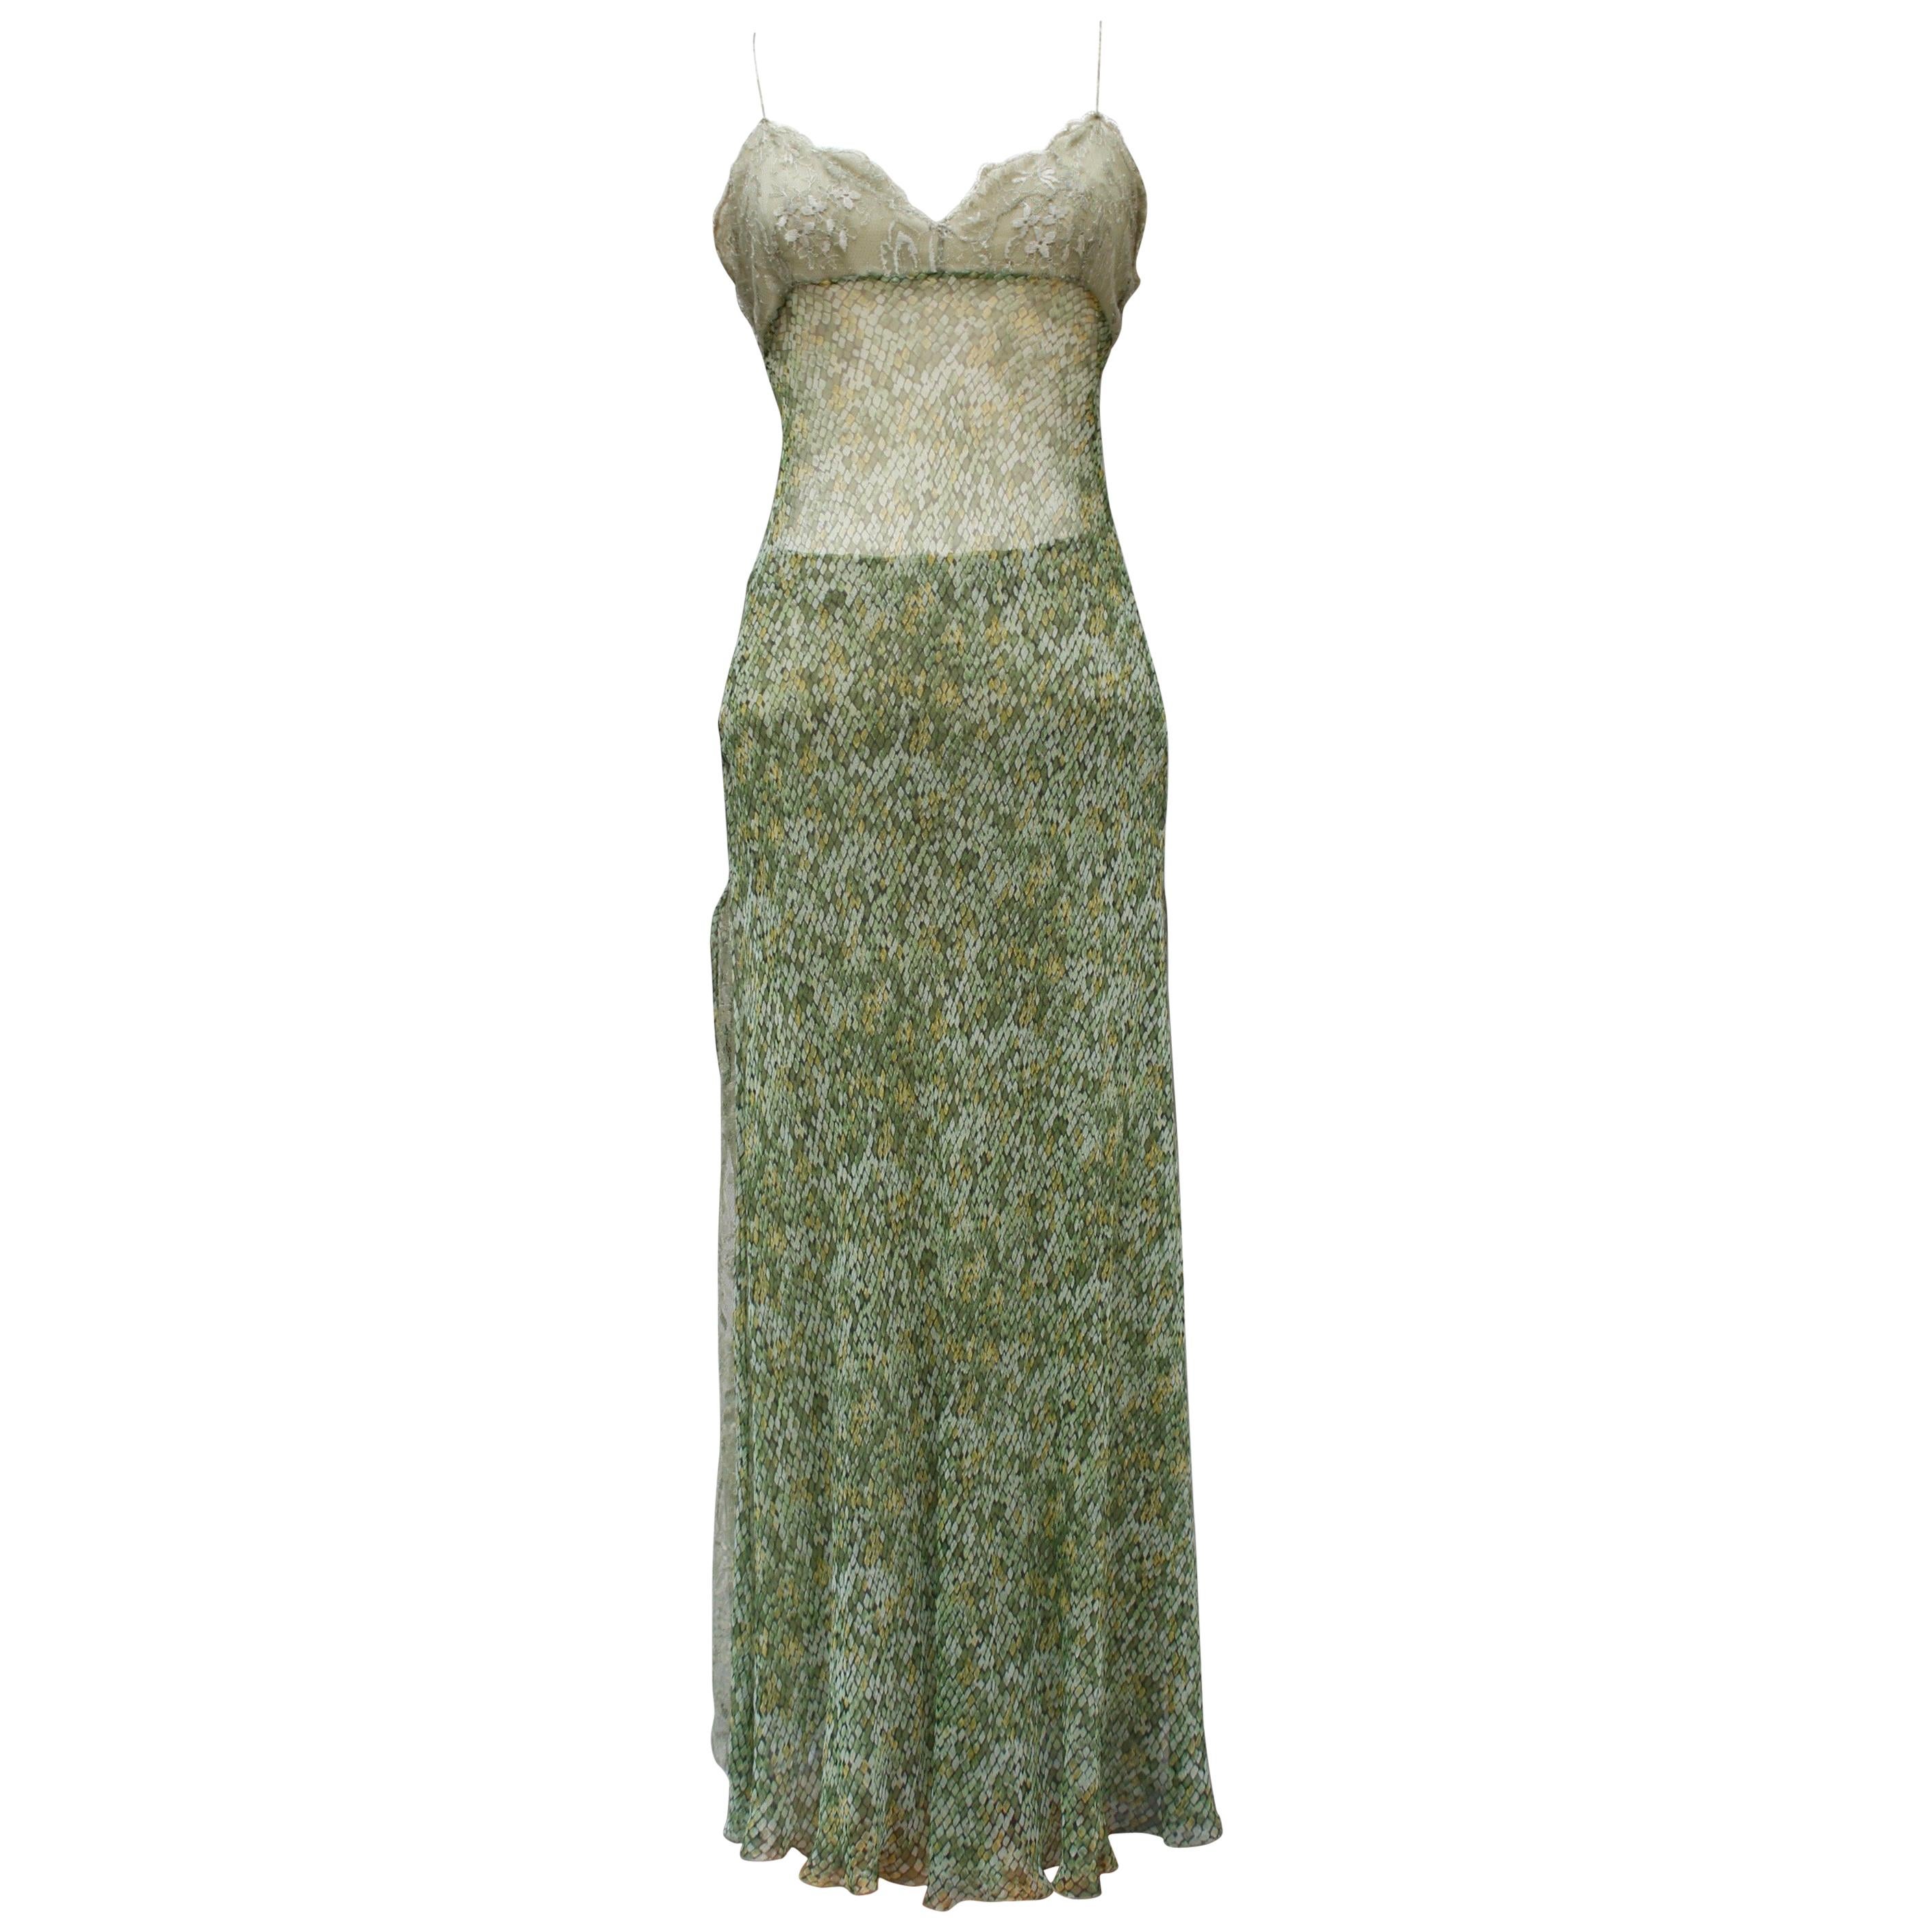 Valentino beautiful dress and skirt set made of green chiffon and lace